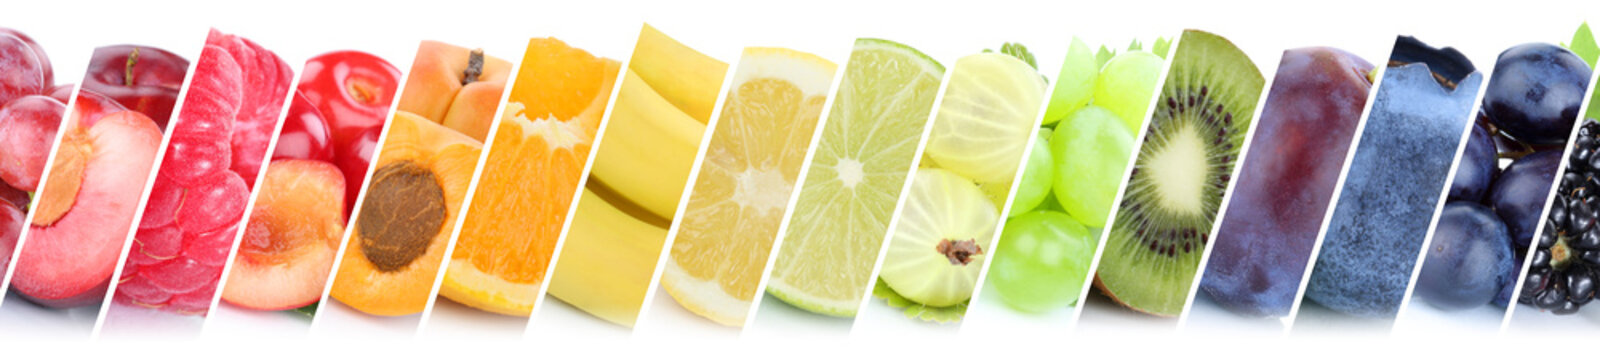 Früchte Frucht Obst Gruppe Sammlung Orange Beeren Bananen